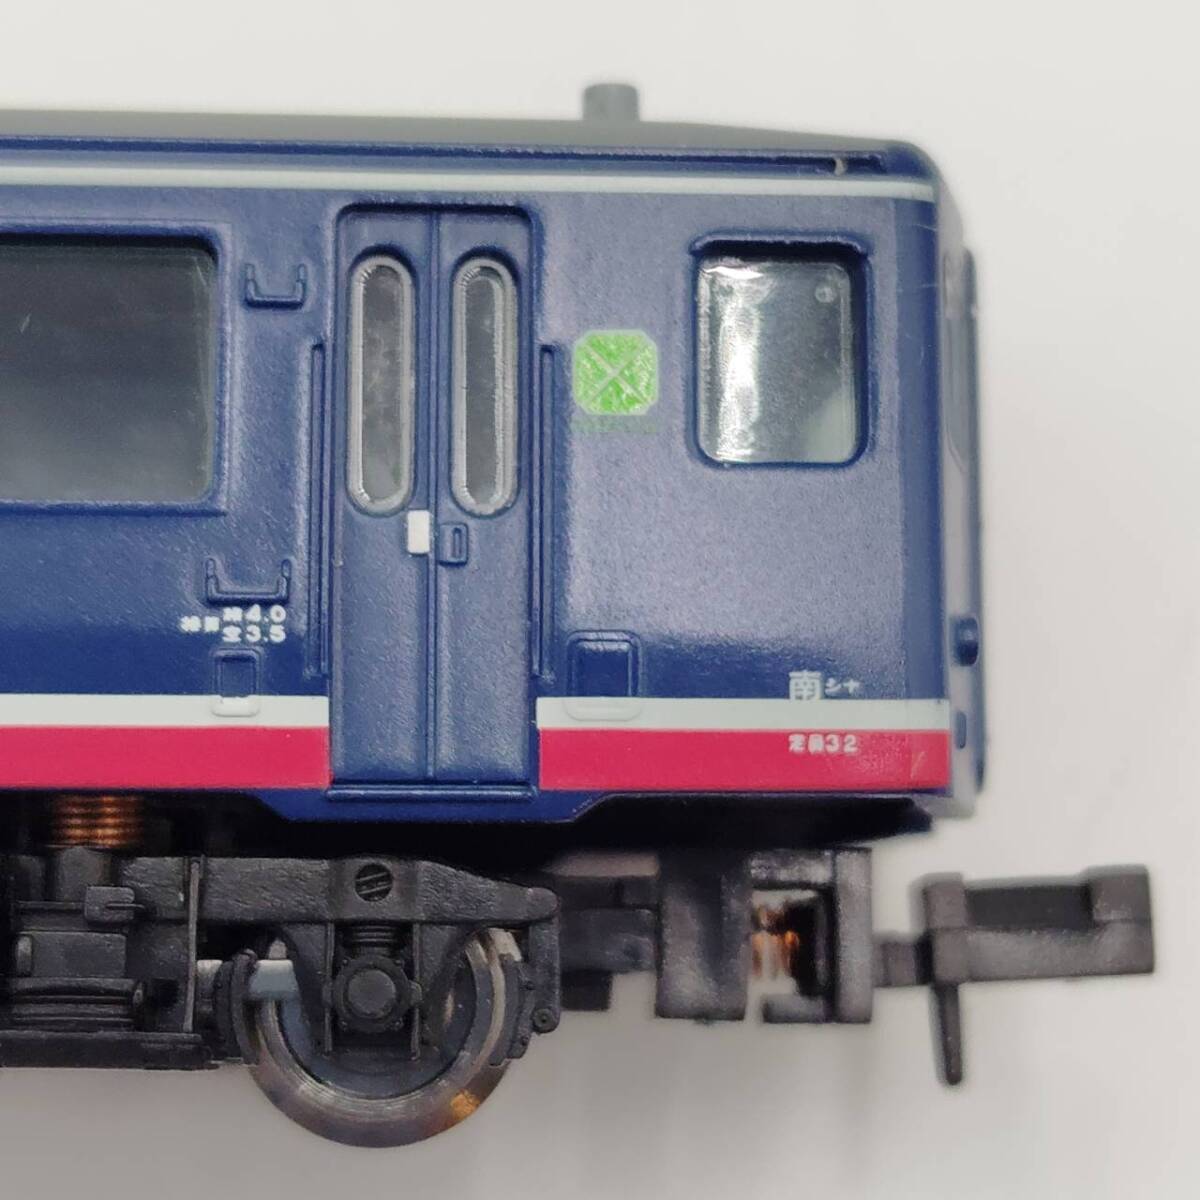 [ закончившийся товар ] микро Ace A-2682 12 серия . сиденье . пассажирский поезд Edo 6 обе комплект N gauge железная дорога модель / N-GAUGE MICRO ACE